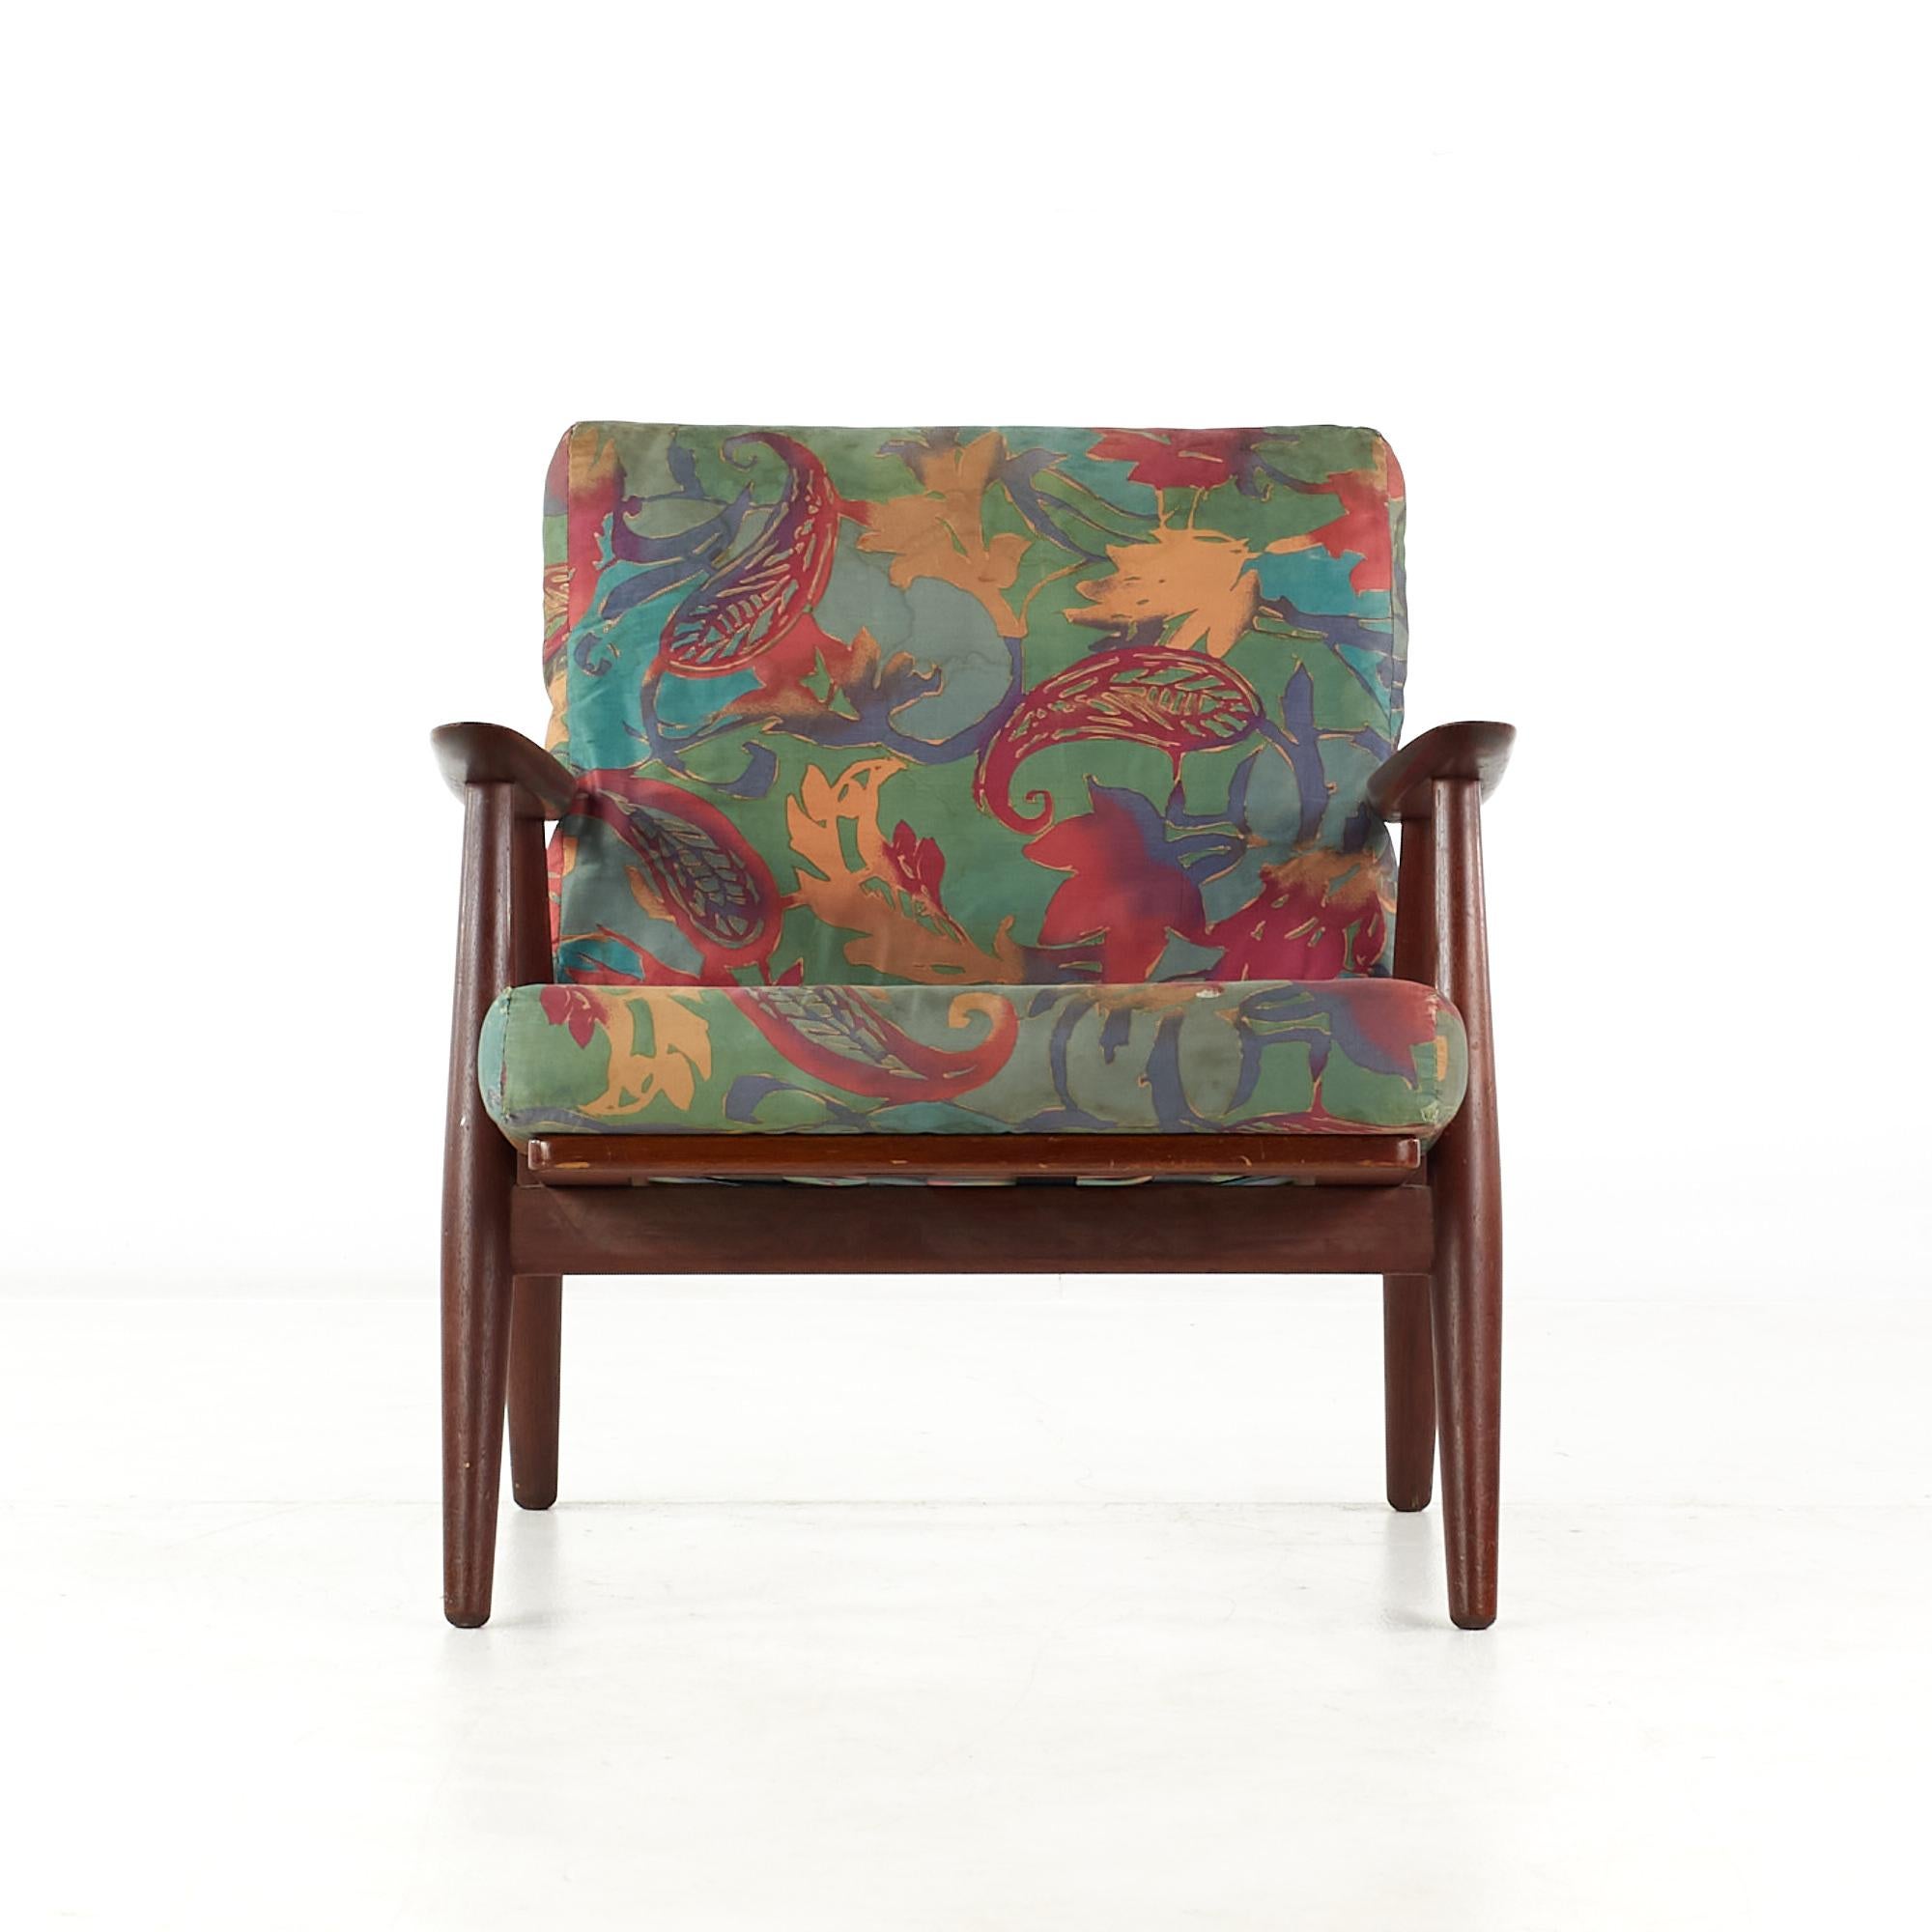 Hans Wegner für Getama Mid Century GE240 Teak Lounge Chair

Dieser Stuhl misst: 26,5 breit x 29 tief x 29,5 hoch, mit einer Sitzhöhe von 16 und Armhöhe/Stuhlabstand 22 Zoll

Alle Möbelstücke sind in einem so genannten restaurierten Vintage-Zustand